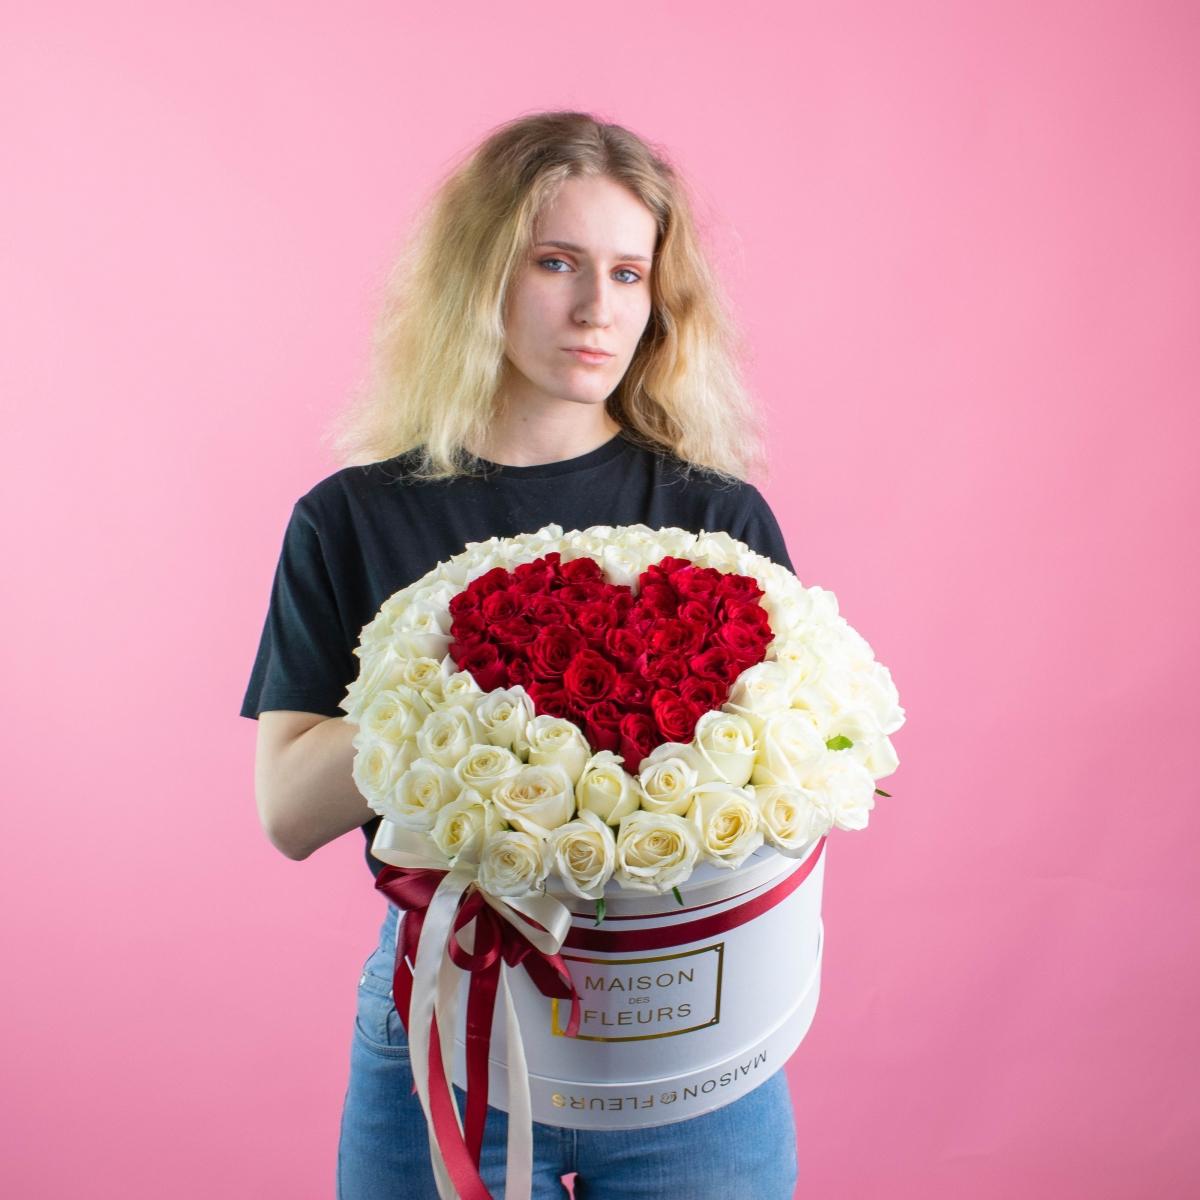 Белые и красные розы в форме сердца в коробке